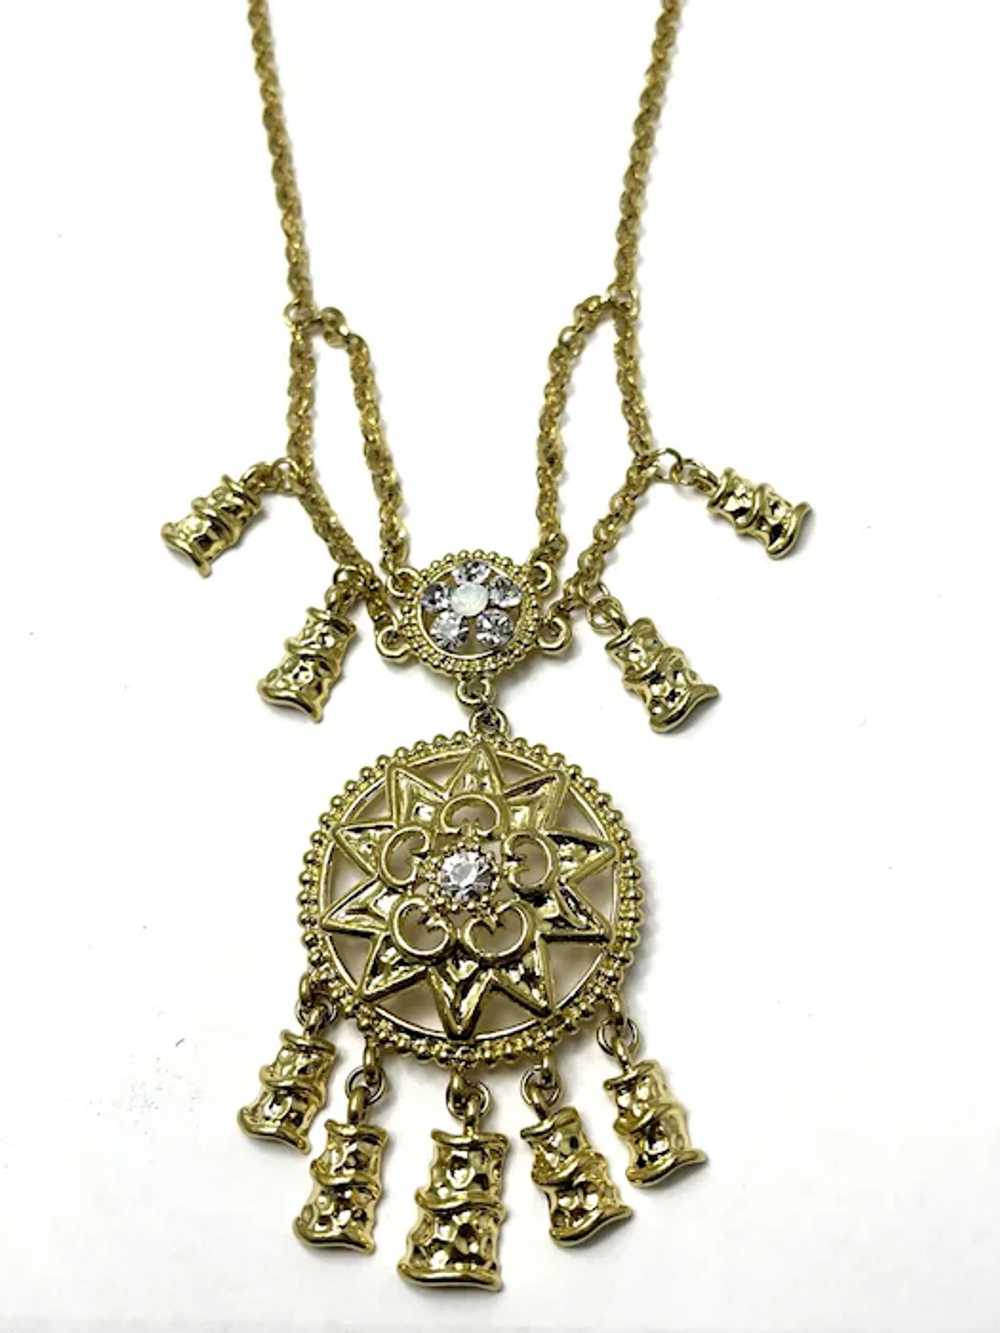 Vintage Rhinestone Charm Necklace - image 3